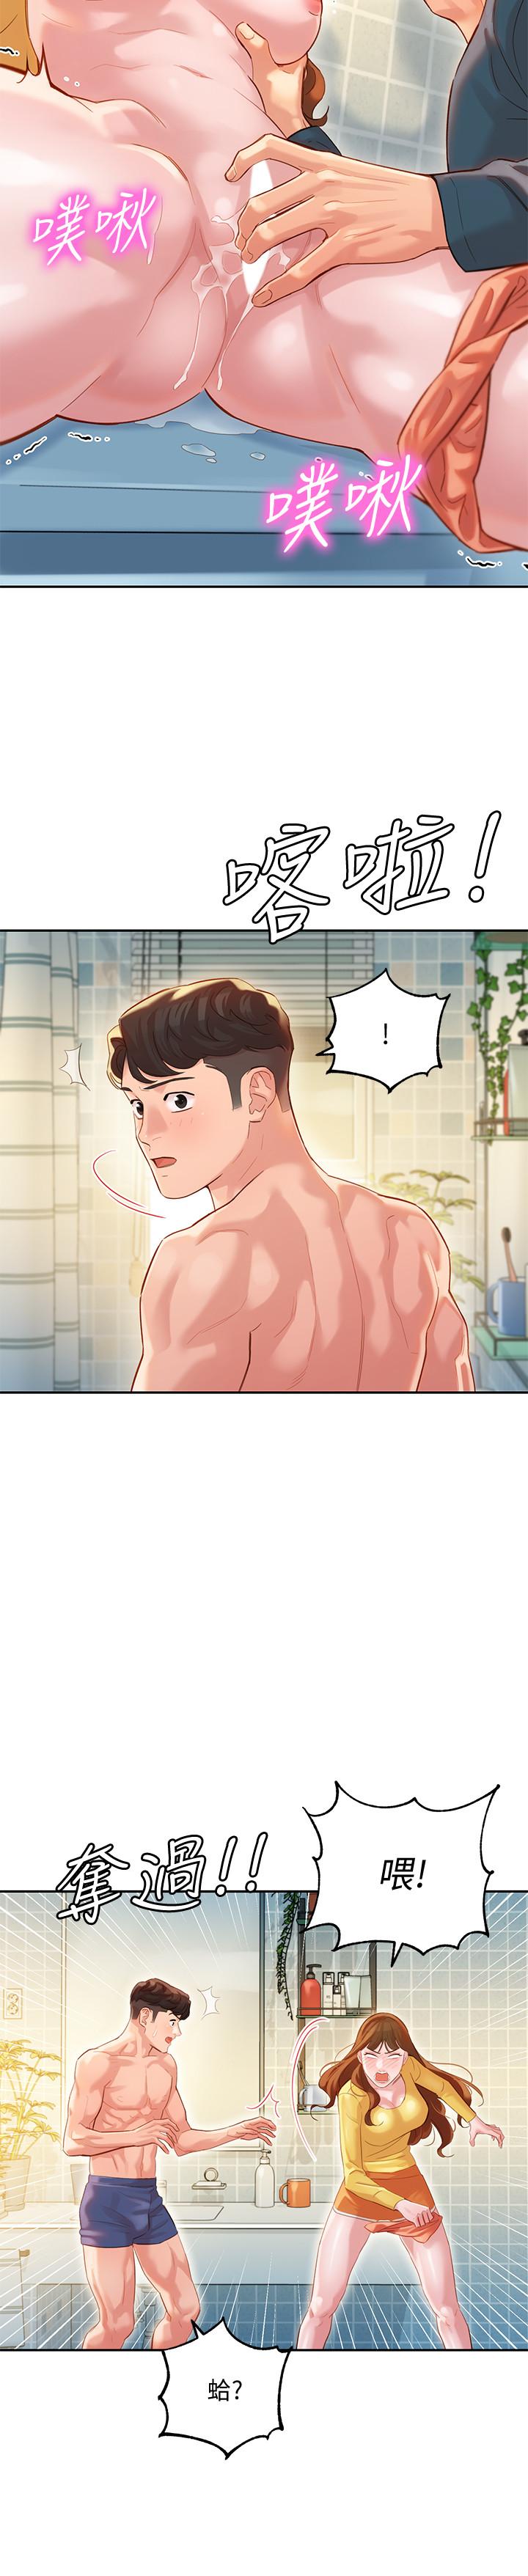 韩国污漫画 女神寫真 第26话-难道他们在浴室里...？ 19